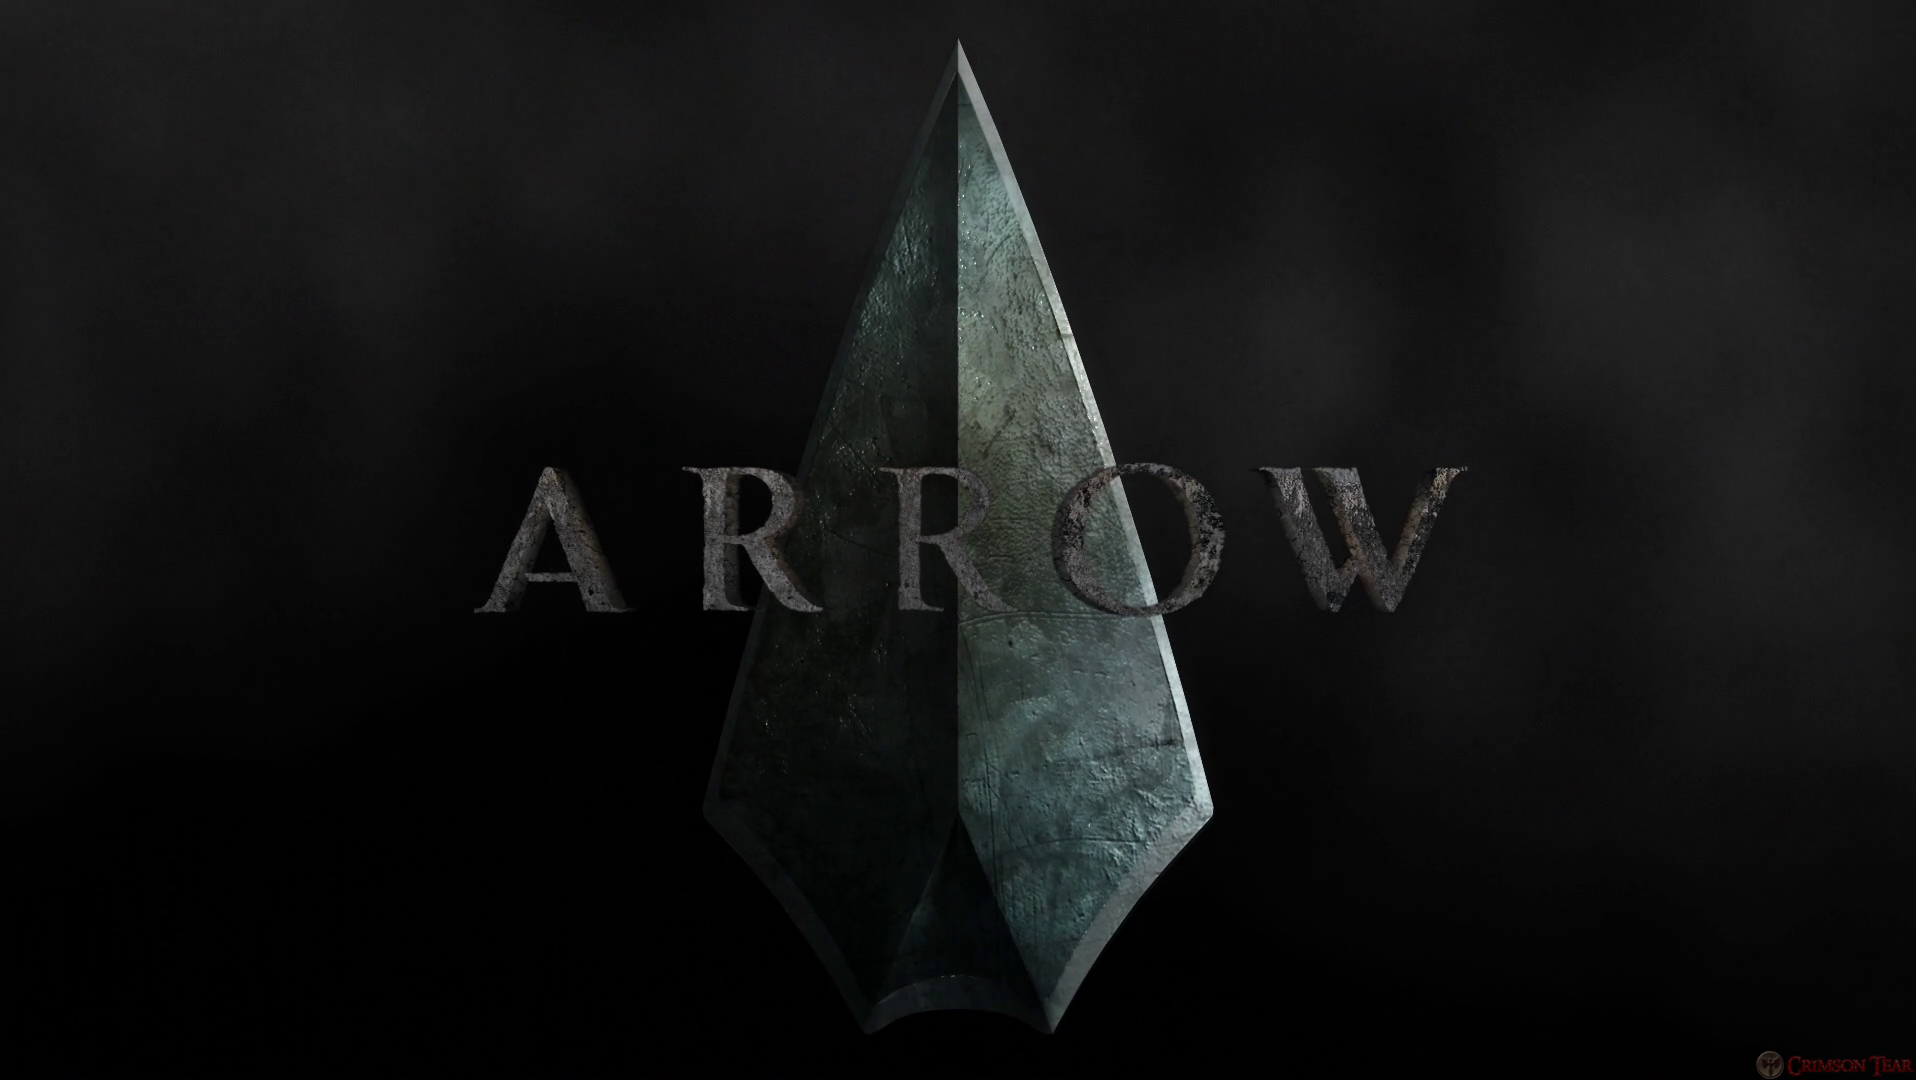 The arrow Logos.